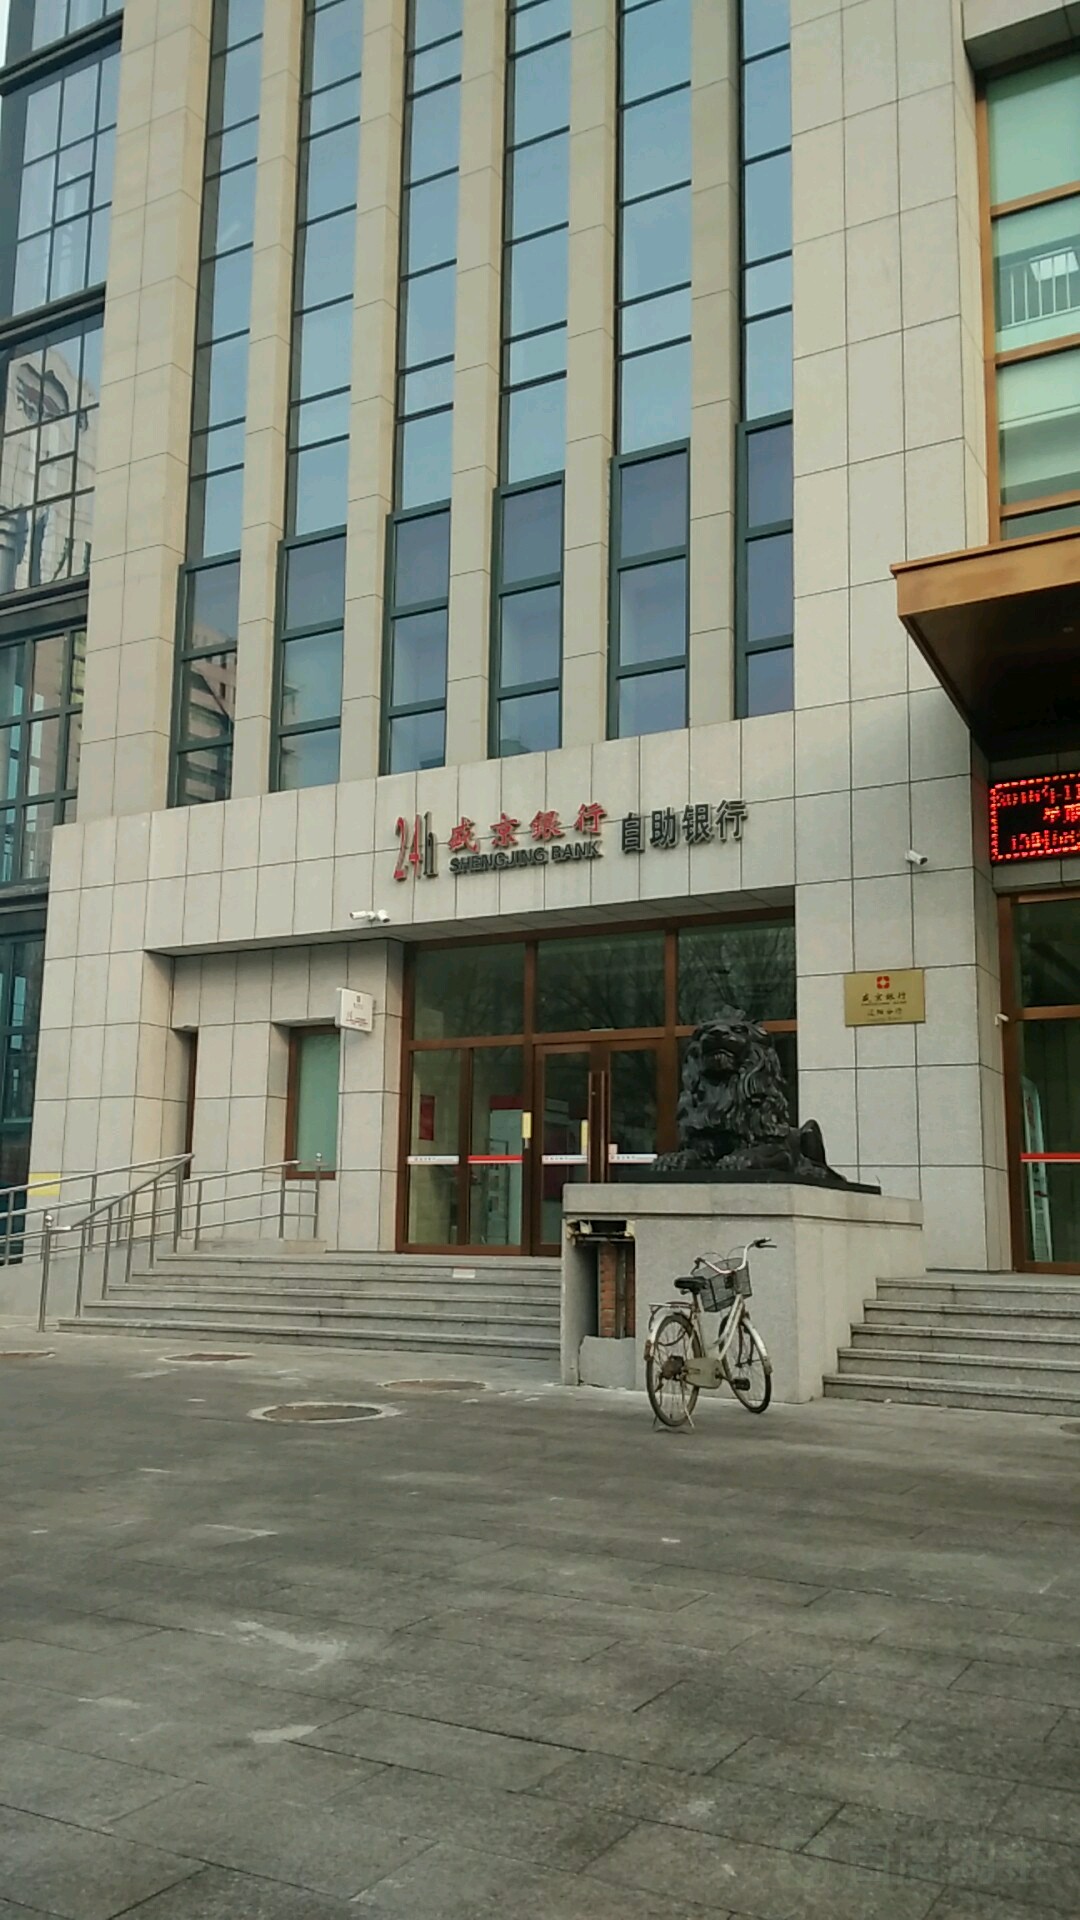 盛京銀行24小時自助銀行(遼陽分行)